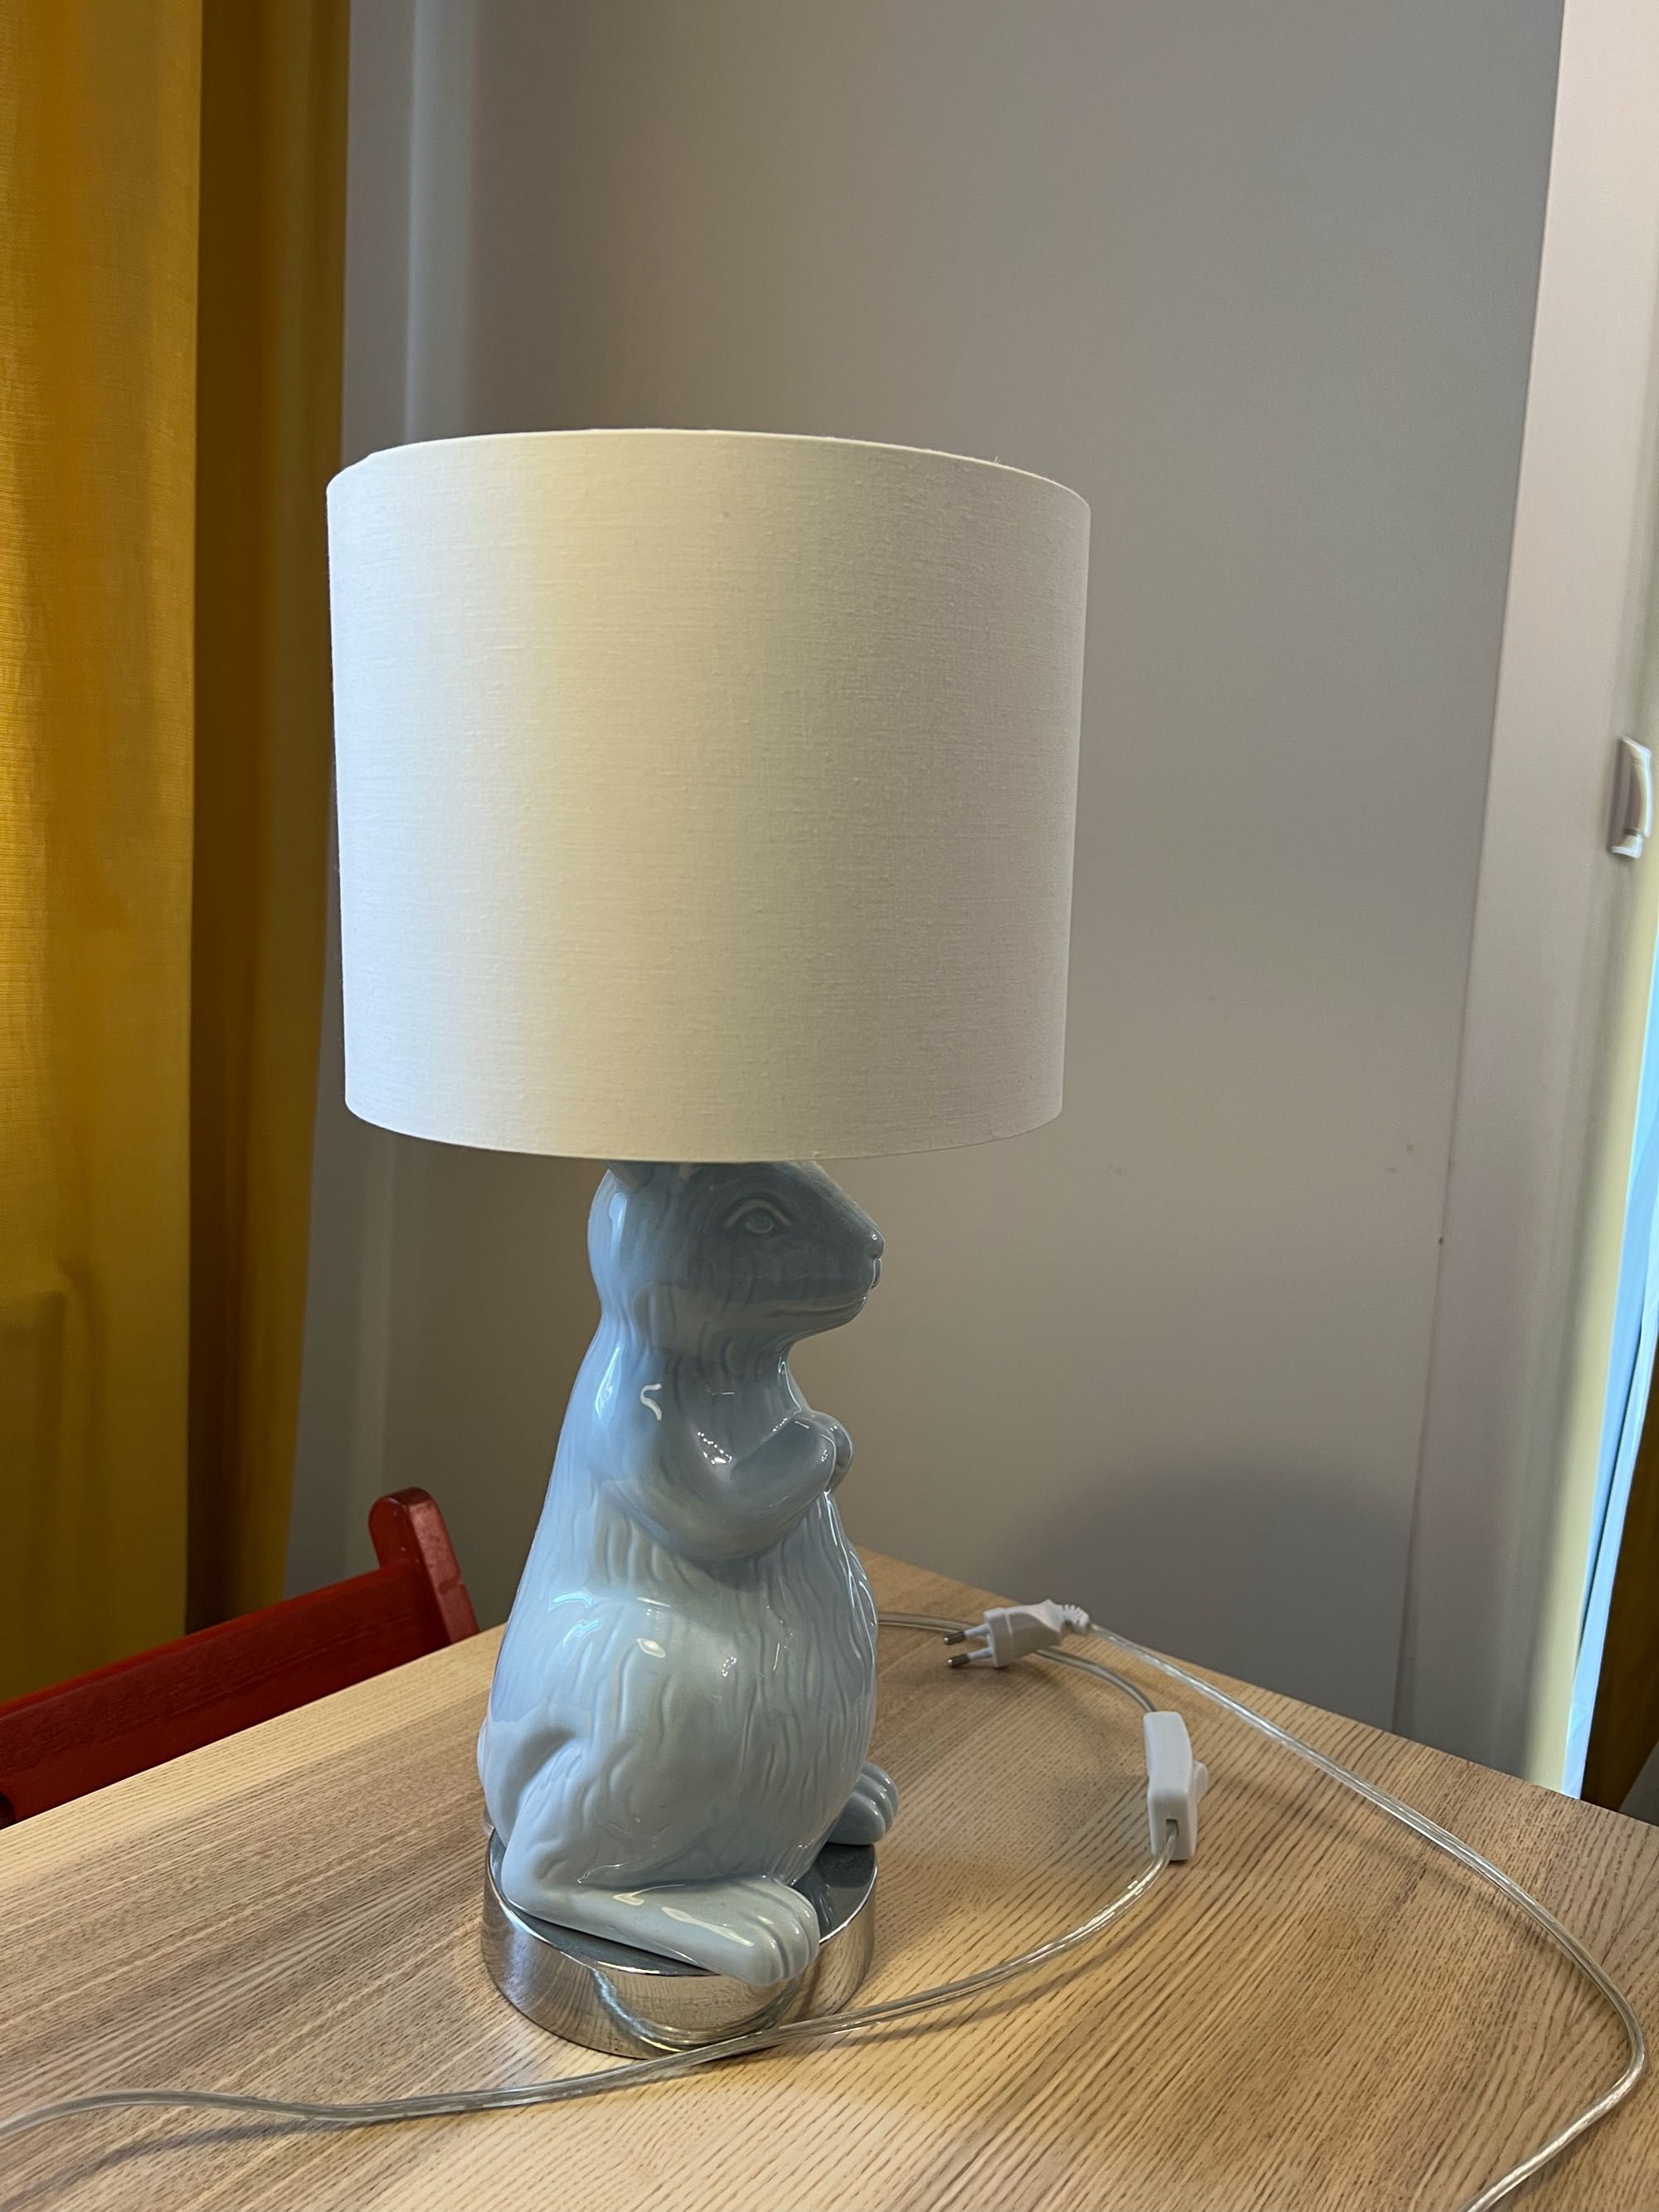 Lampa stołowa królik z tkmaxx